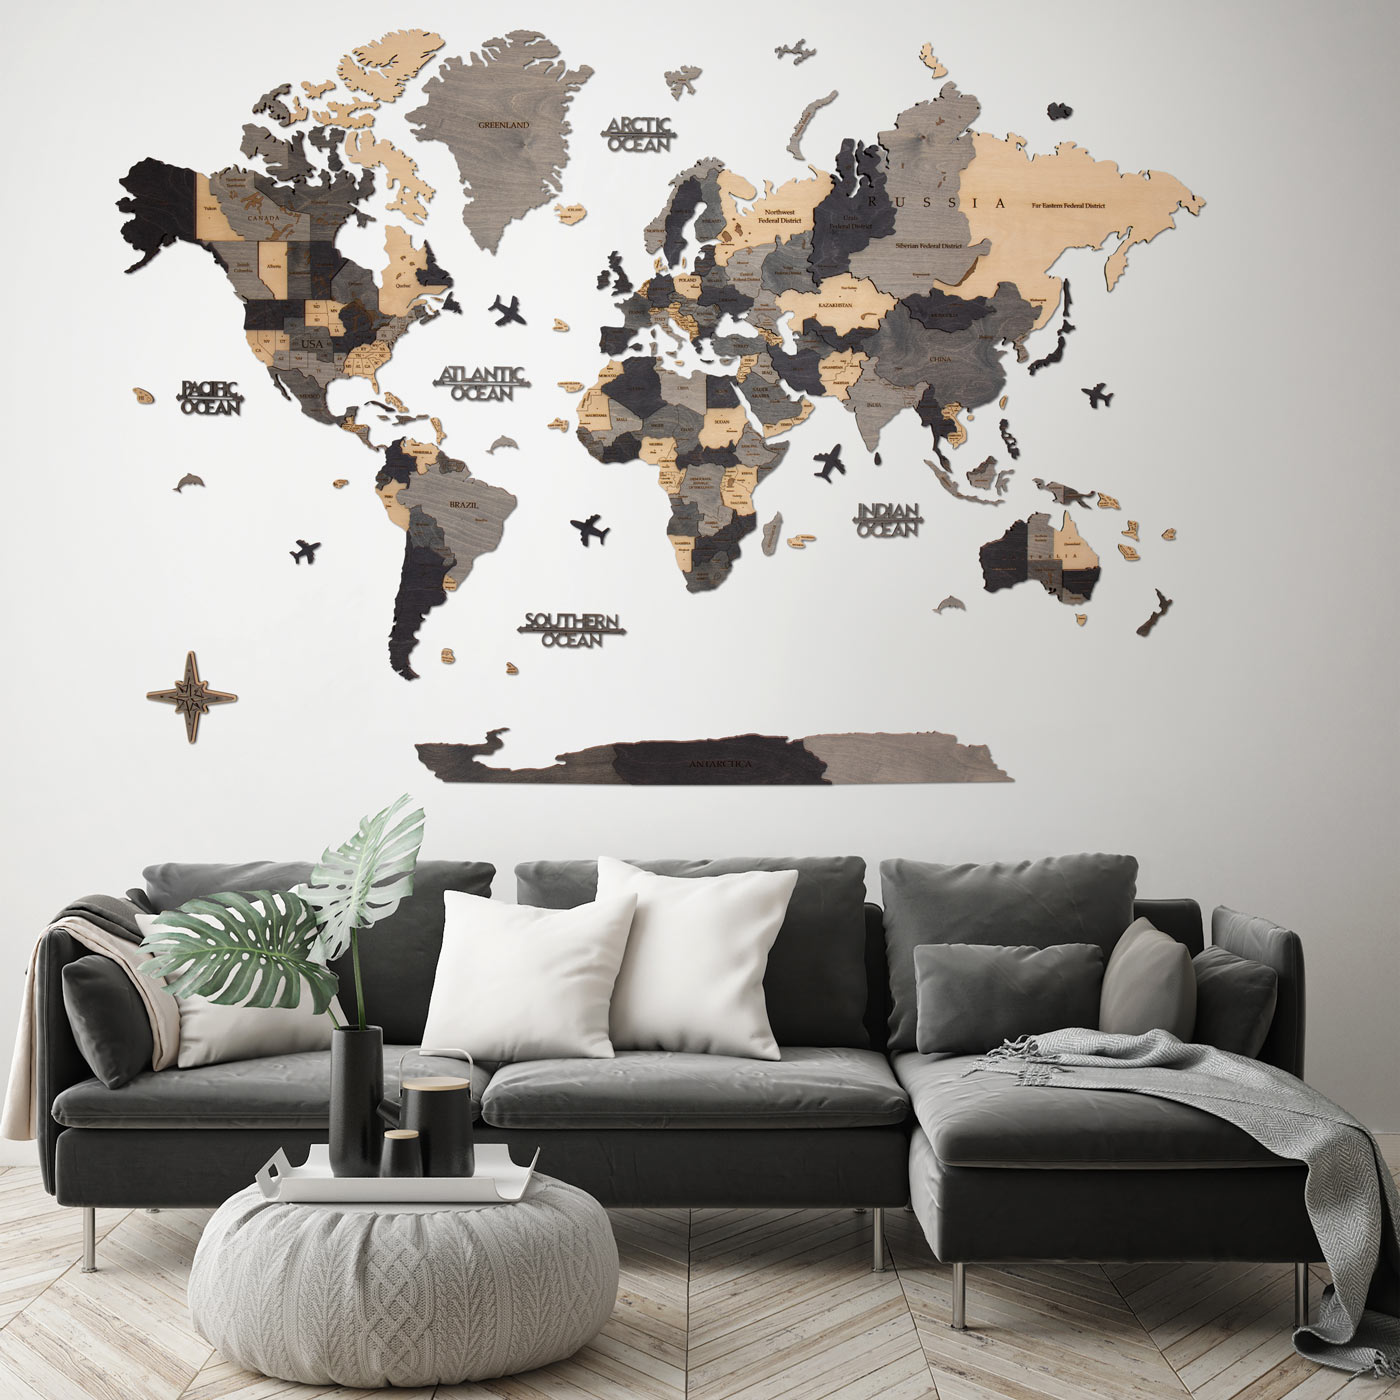 Τρισδιάστατος ξύλινος παγκόσμιος χάρτης. Ξύλινη διακόσμηση τοίχου. Χάρτης με γκρι και μπεζ αποχρώσεις. Ksilart